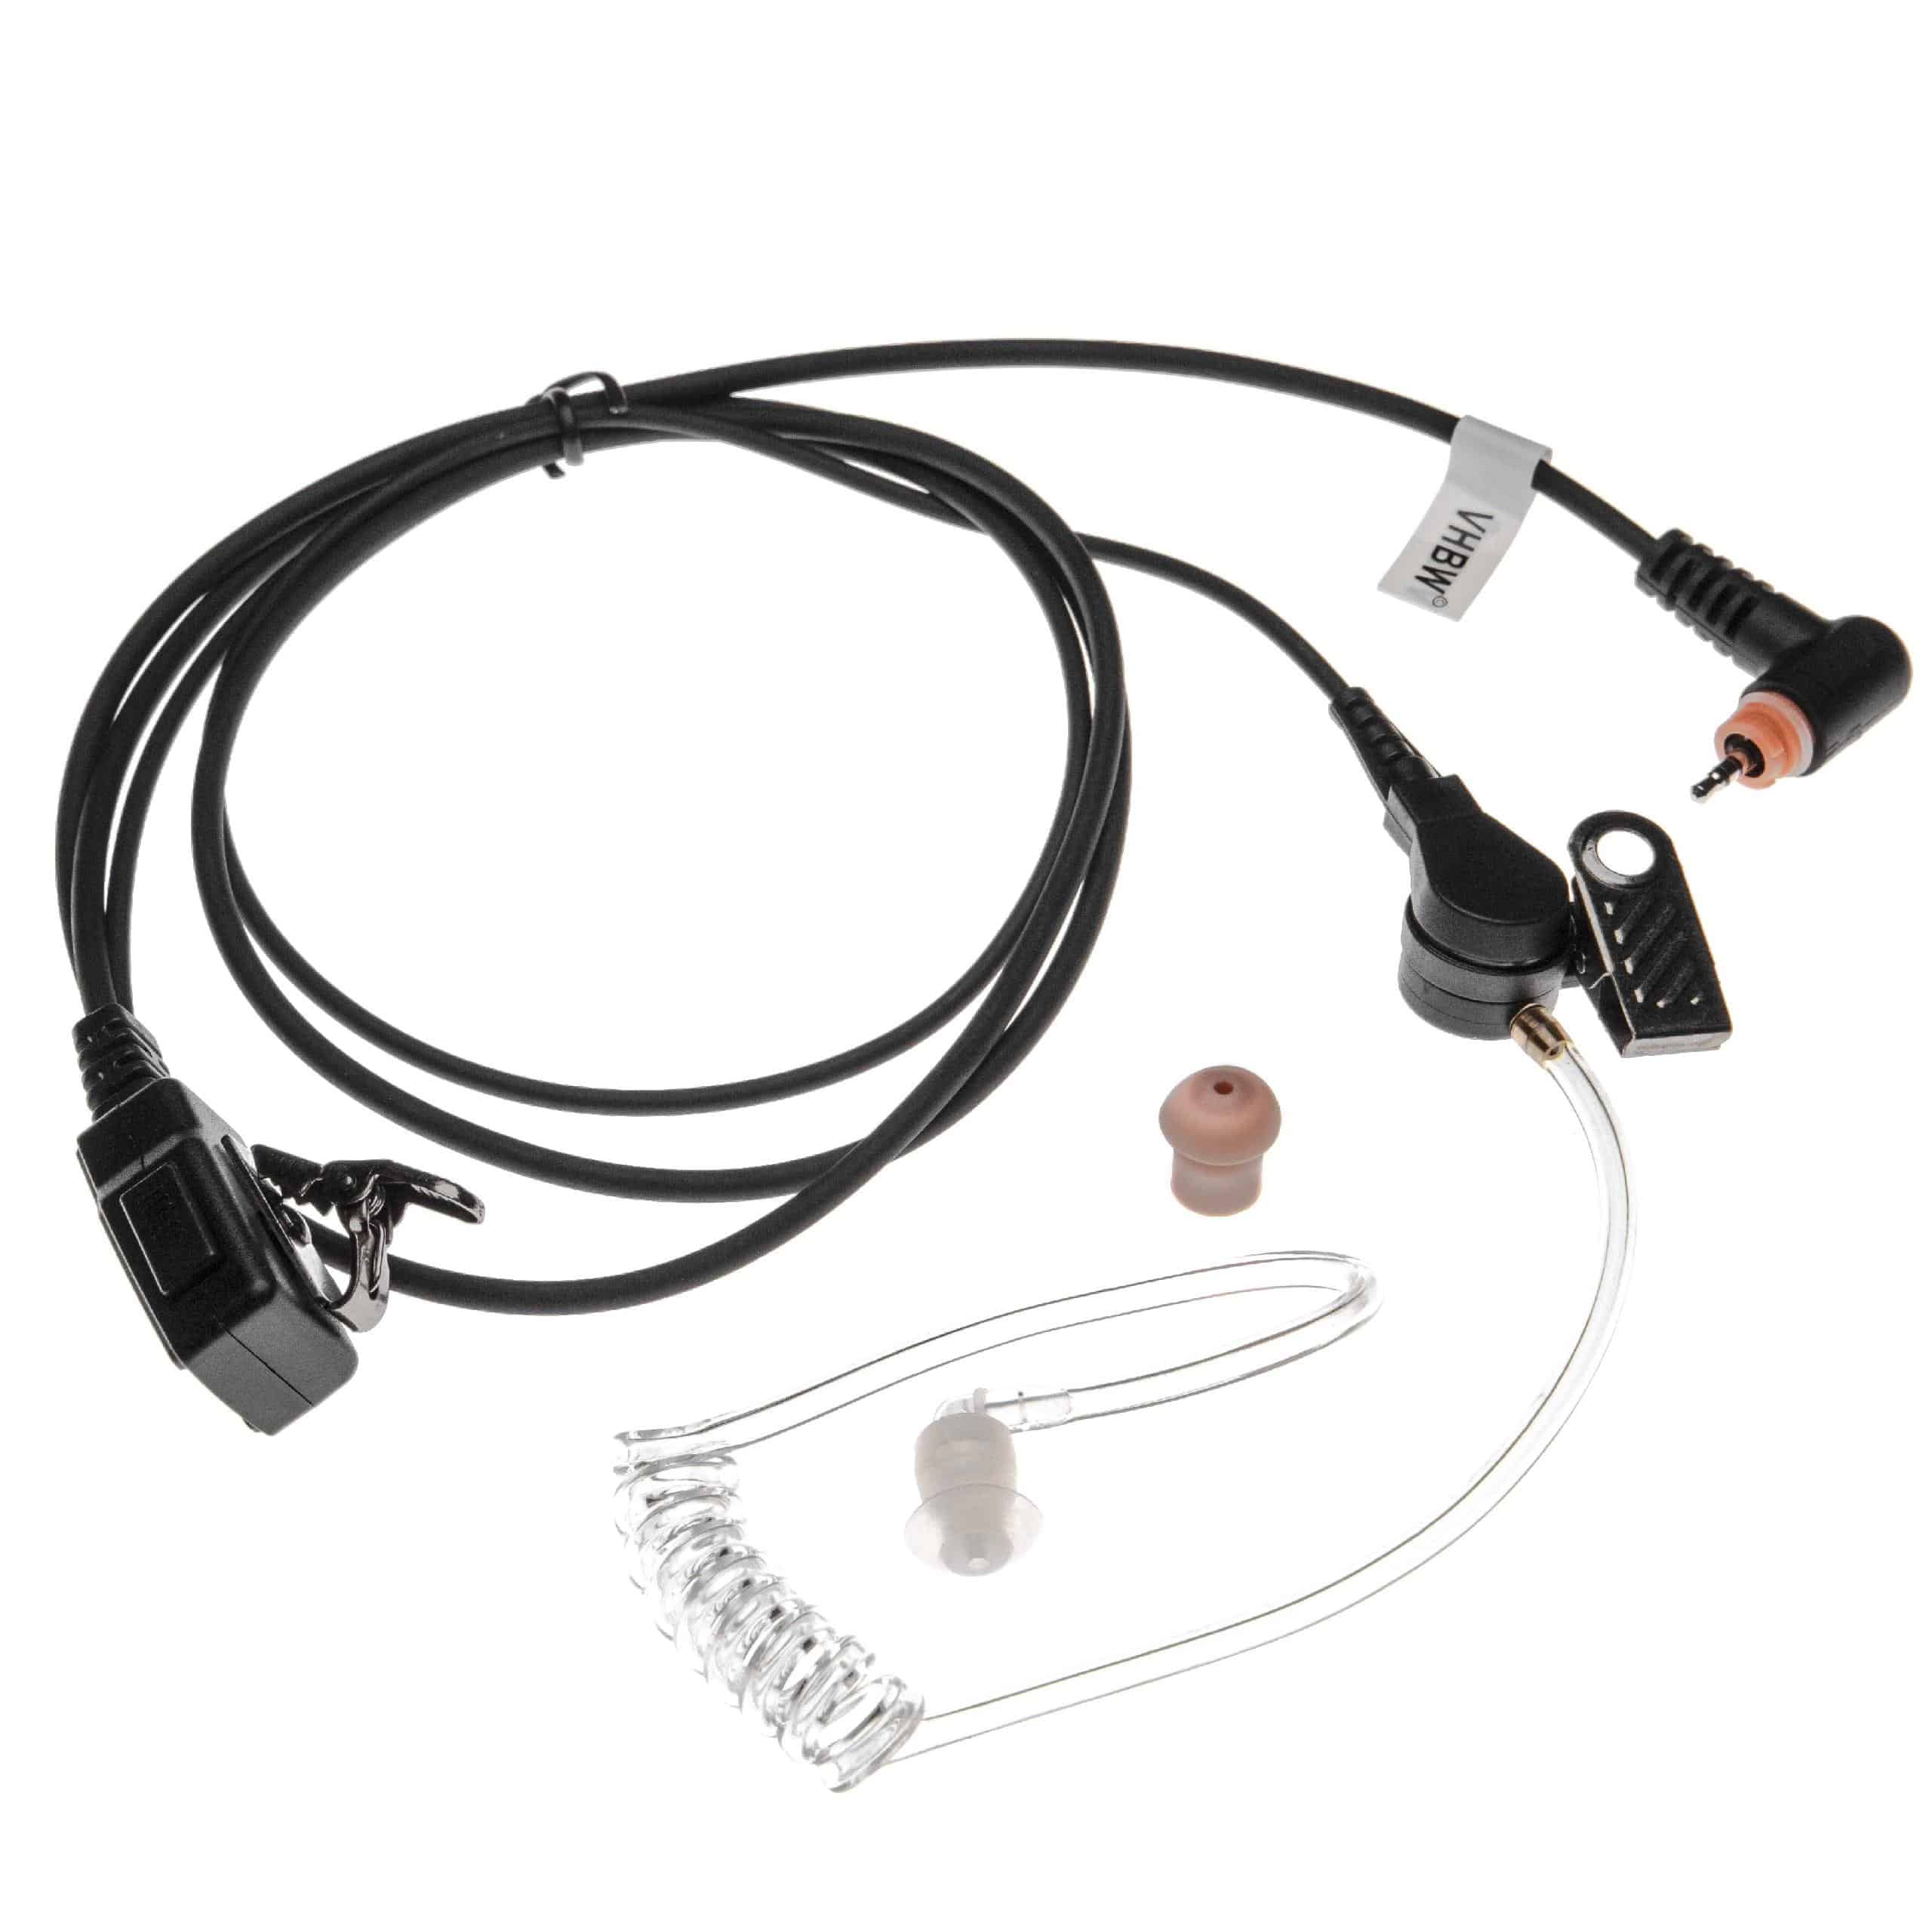 Security headset per ricetrasmittente Motorola SL7550 - trasparente / nero + pulsante chiamata + supporto clip